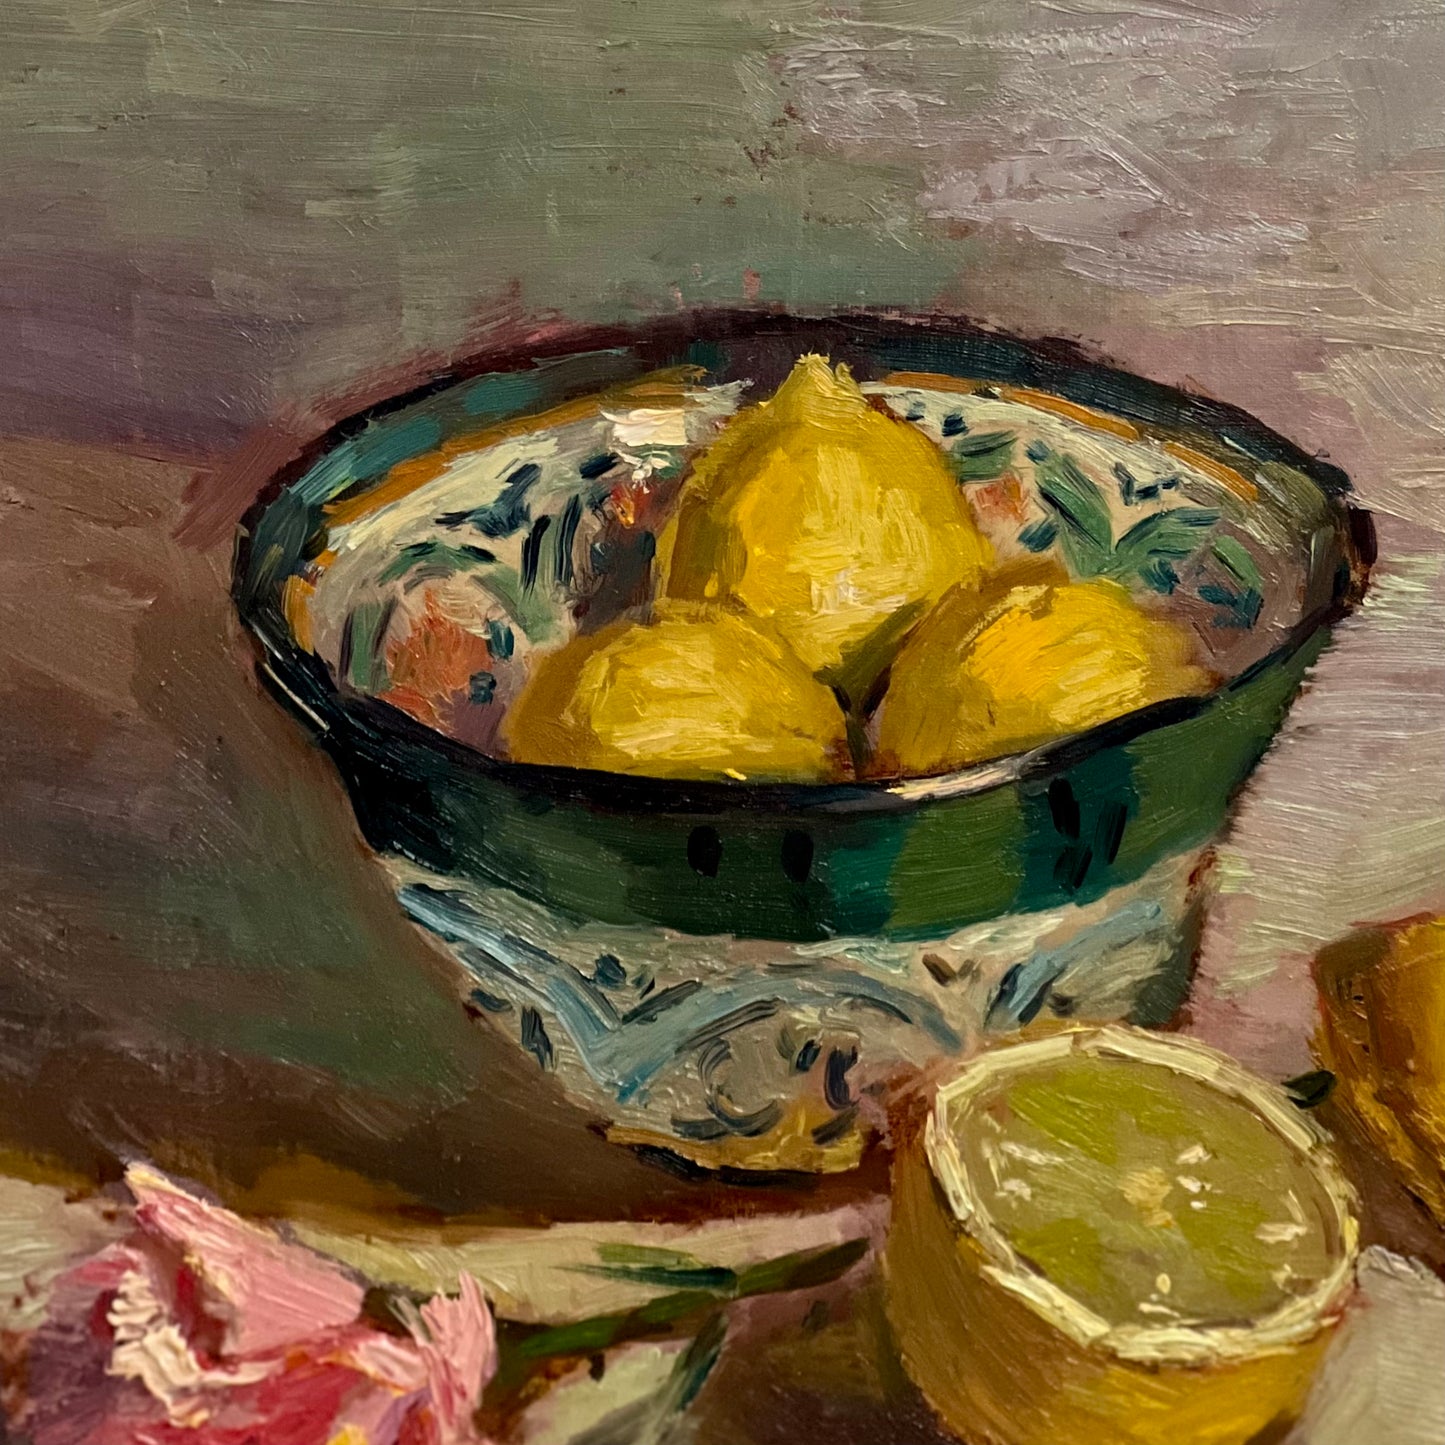 Bowl of Lemons in the studio